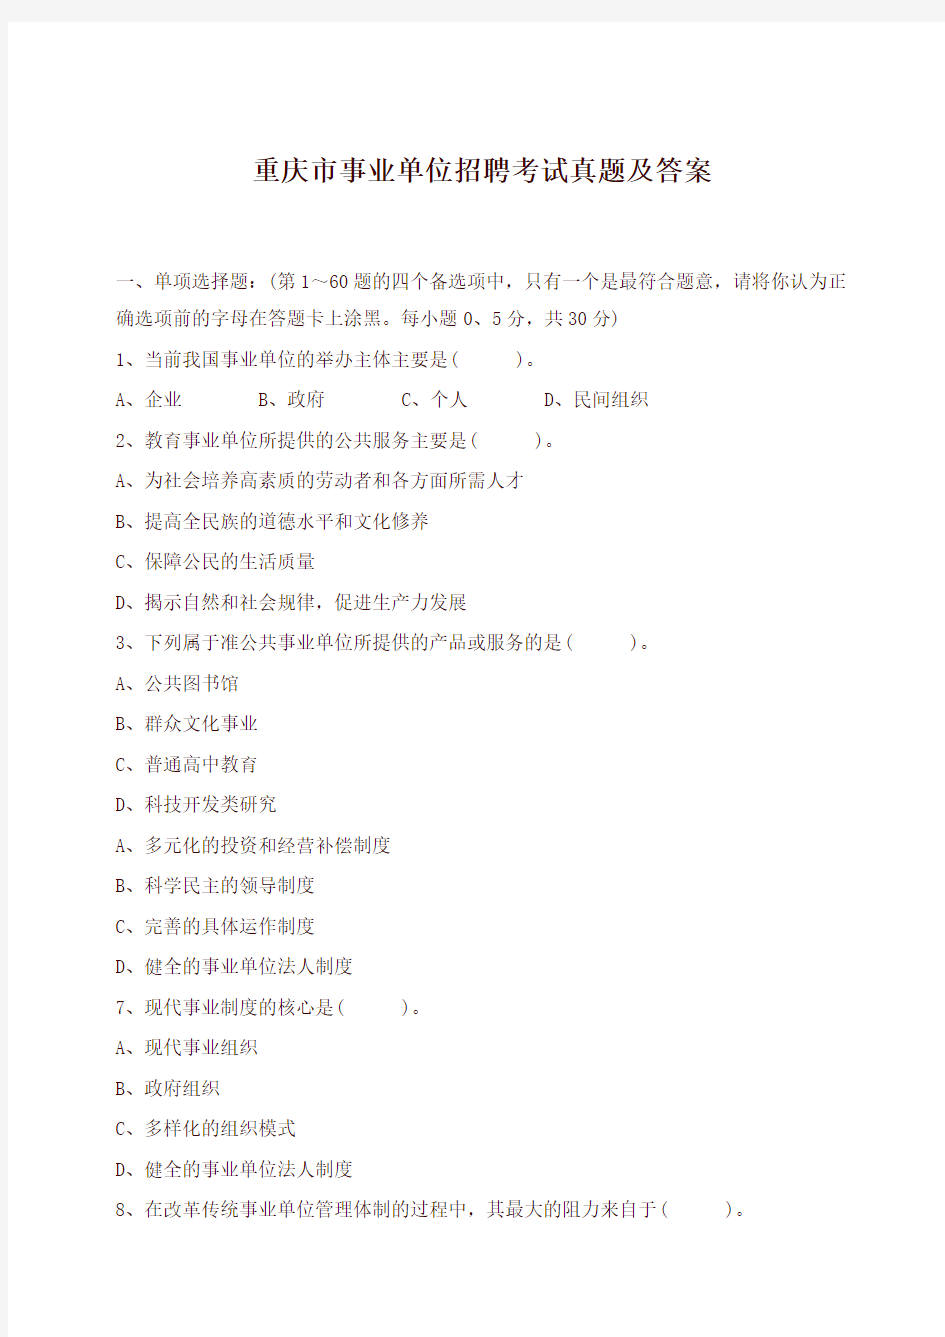 重庆市事业单位招聘考试真题及答案-强力推荐